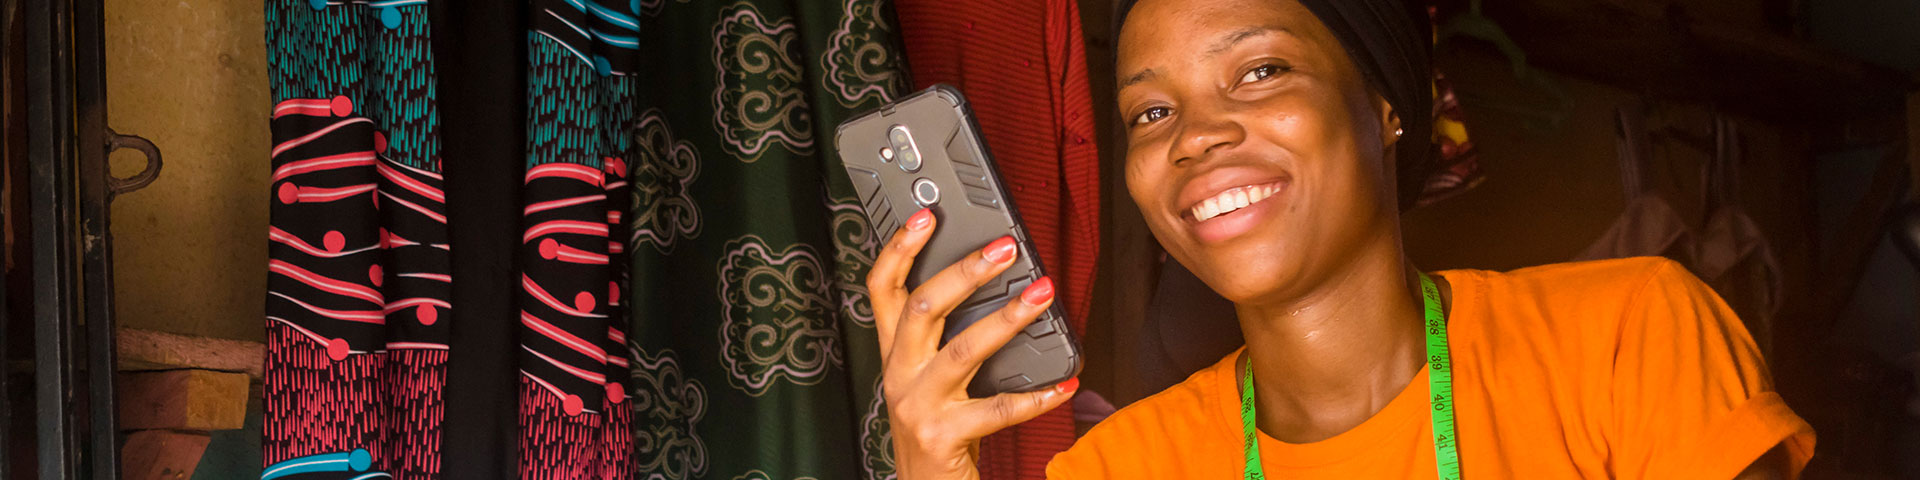 Eine junge afrikanische Frau hält lächelnd ein Handy in der Hand